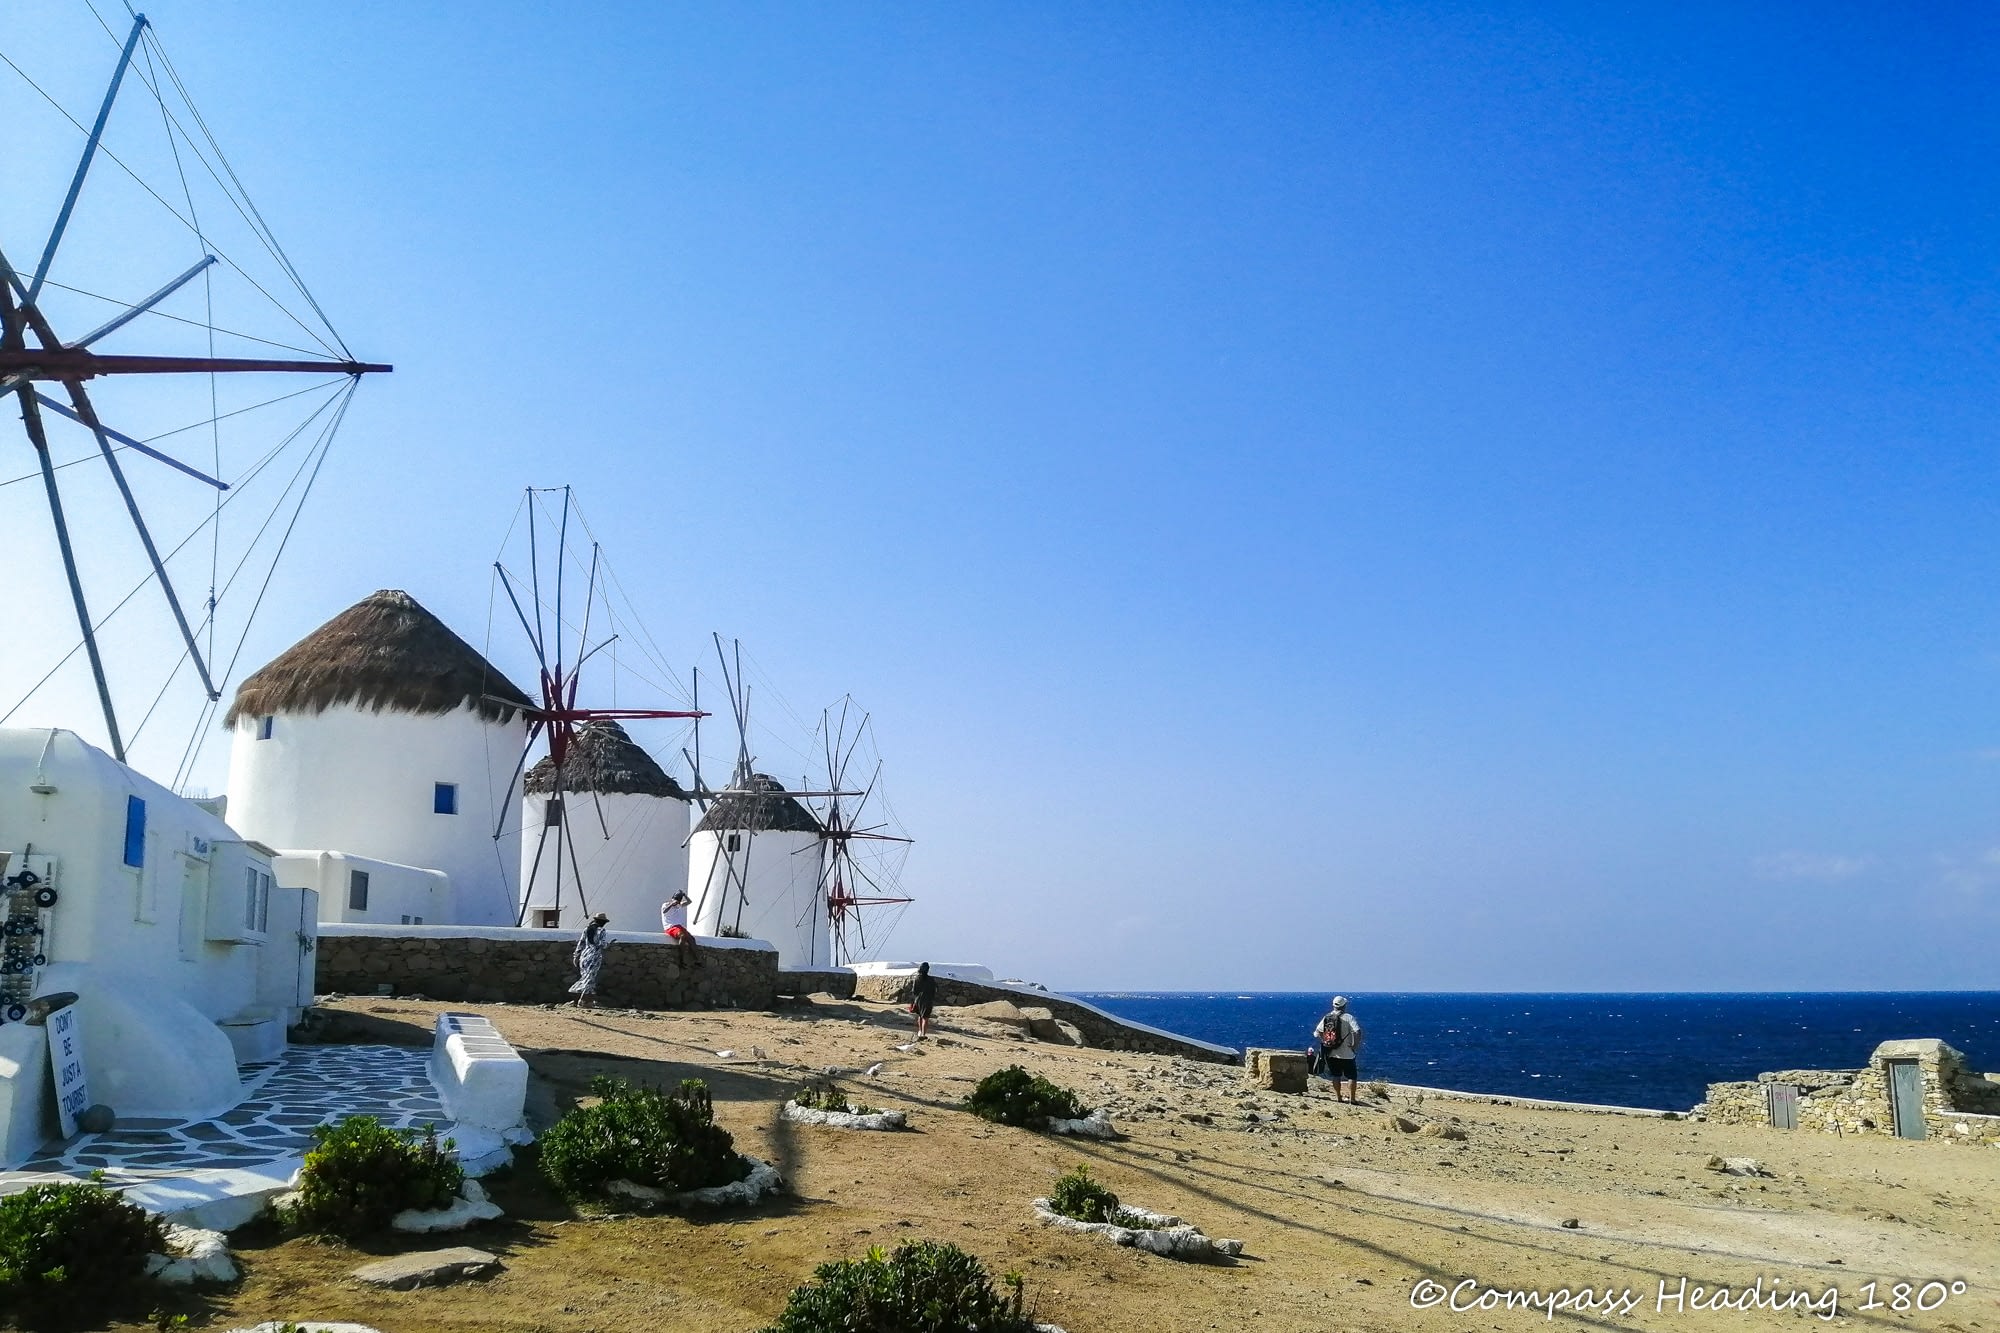 Mykonoksen kaupungin kuuluisat tuulimyllyt meren rannalla, taustalla sininen meri ja vaahtopäitä.